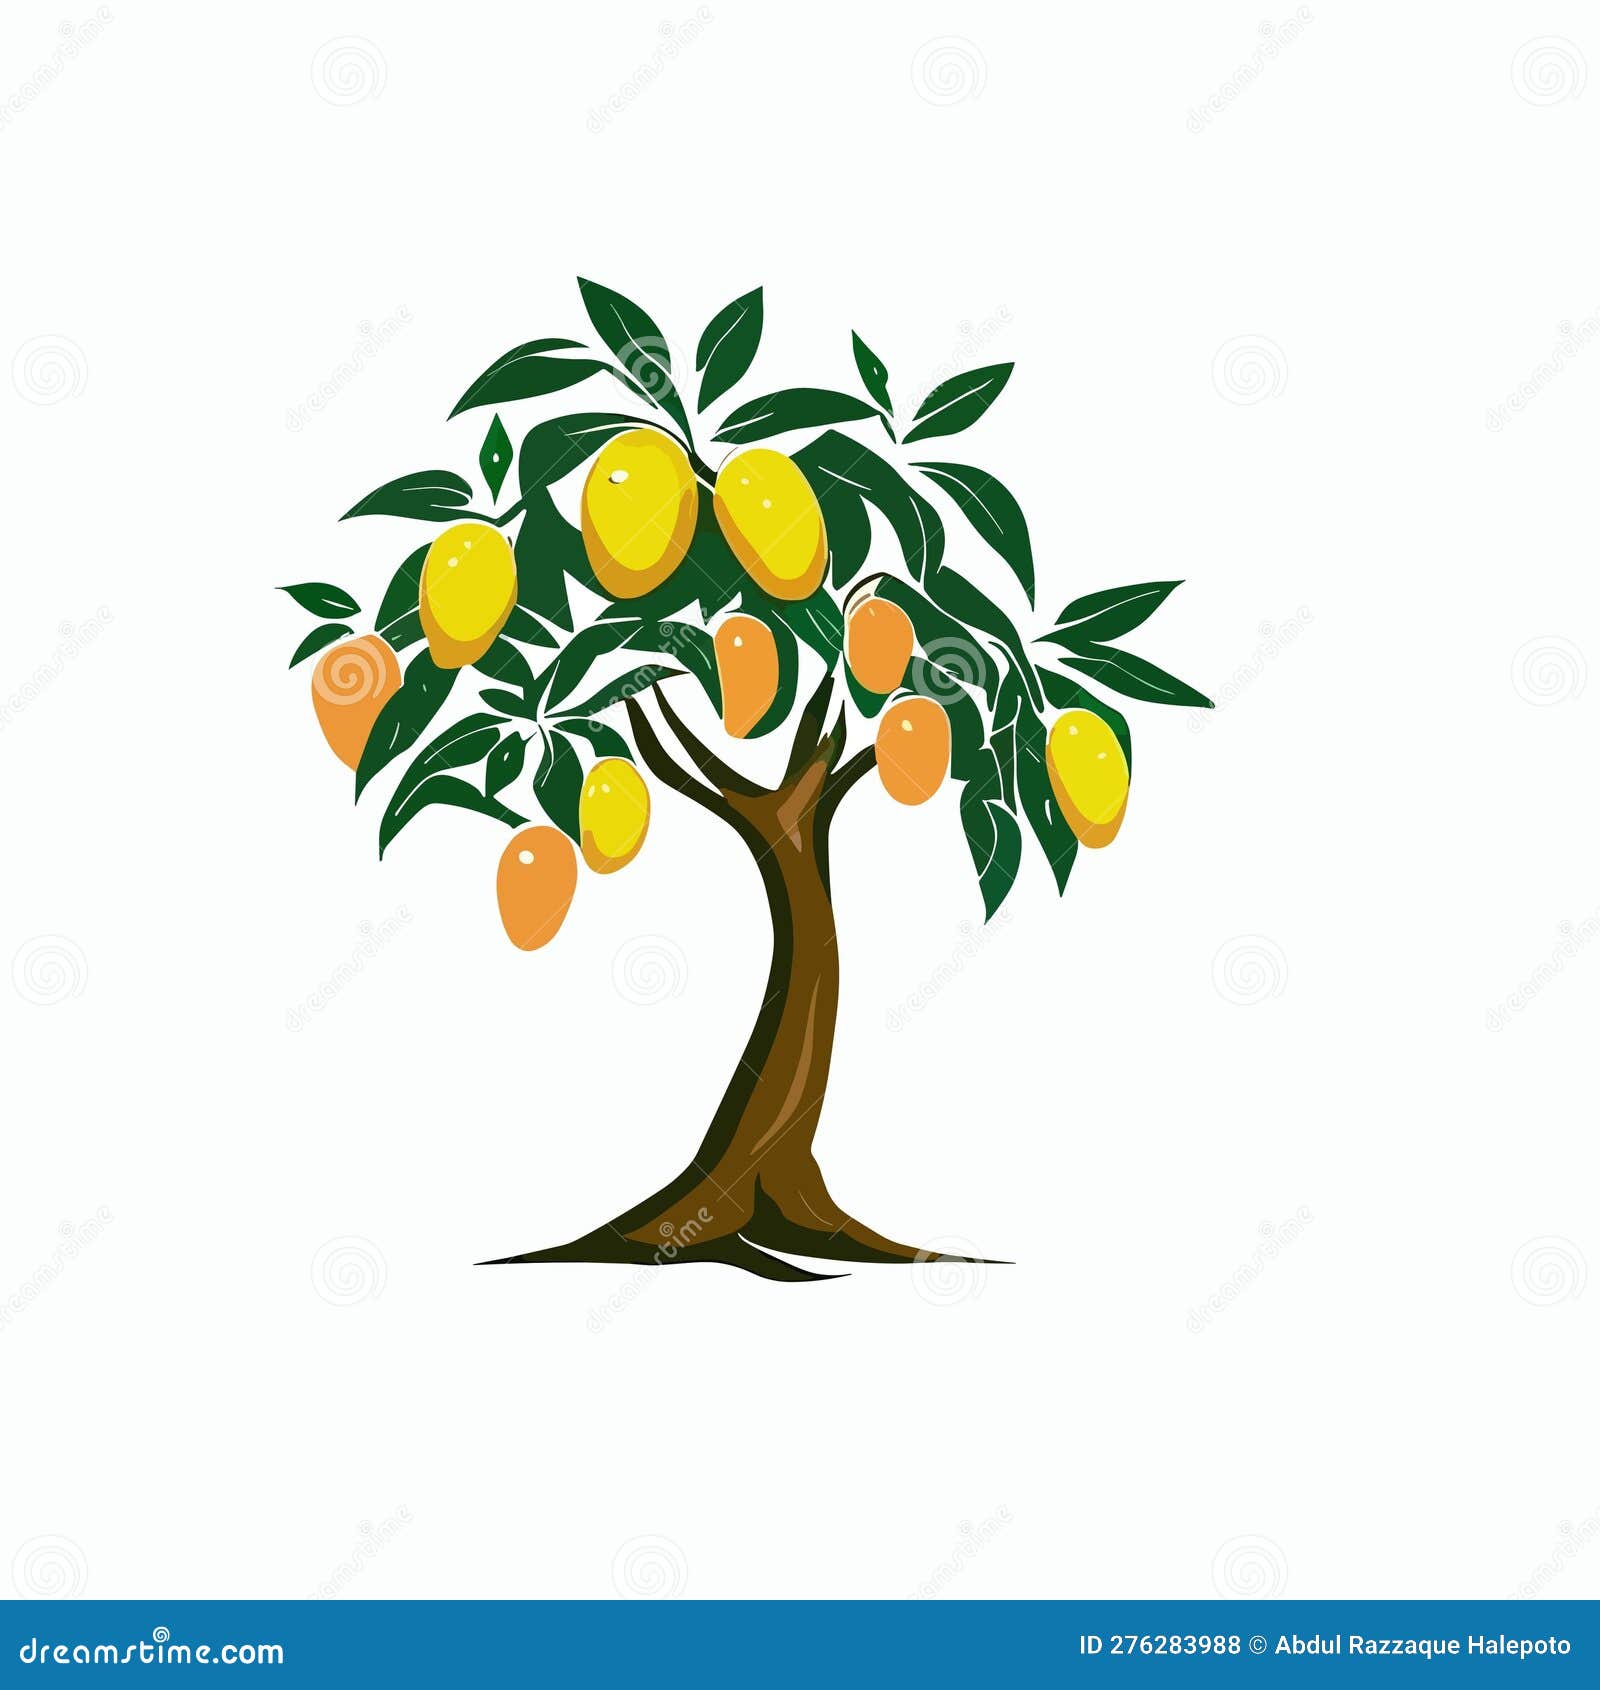 Mango Tree Illustrations & Vectors